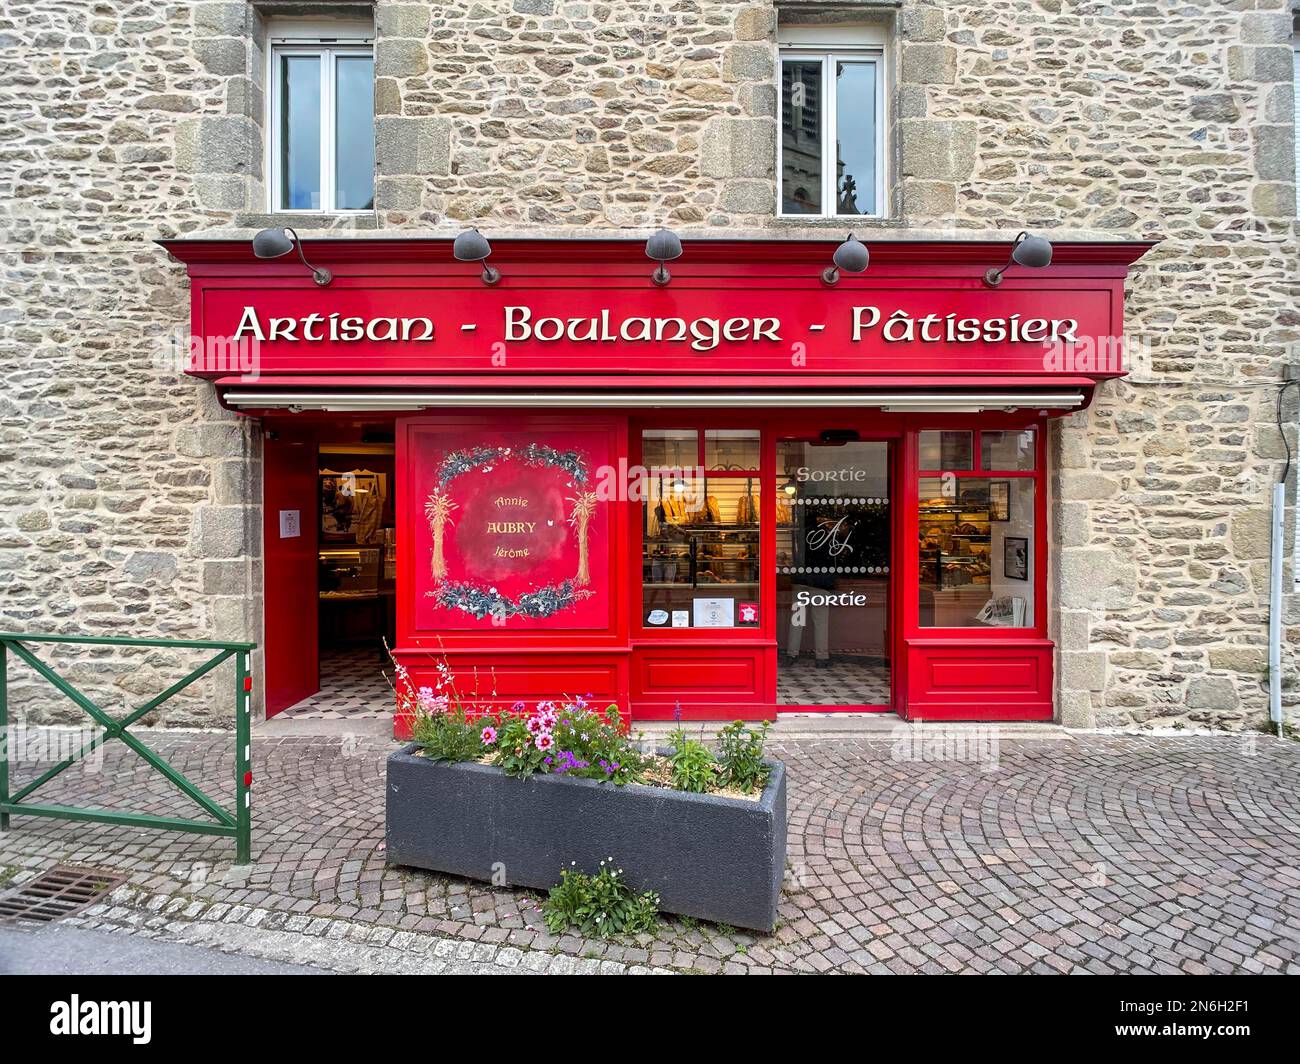 Façade de maison et vitrine d'une boulangerie typiquement française, Surzur, département du Morbihan, Bretagne, France Banque D'Images